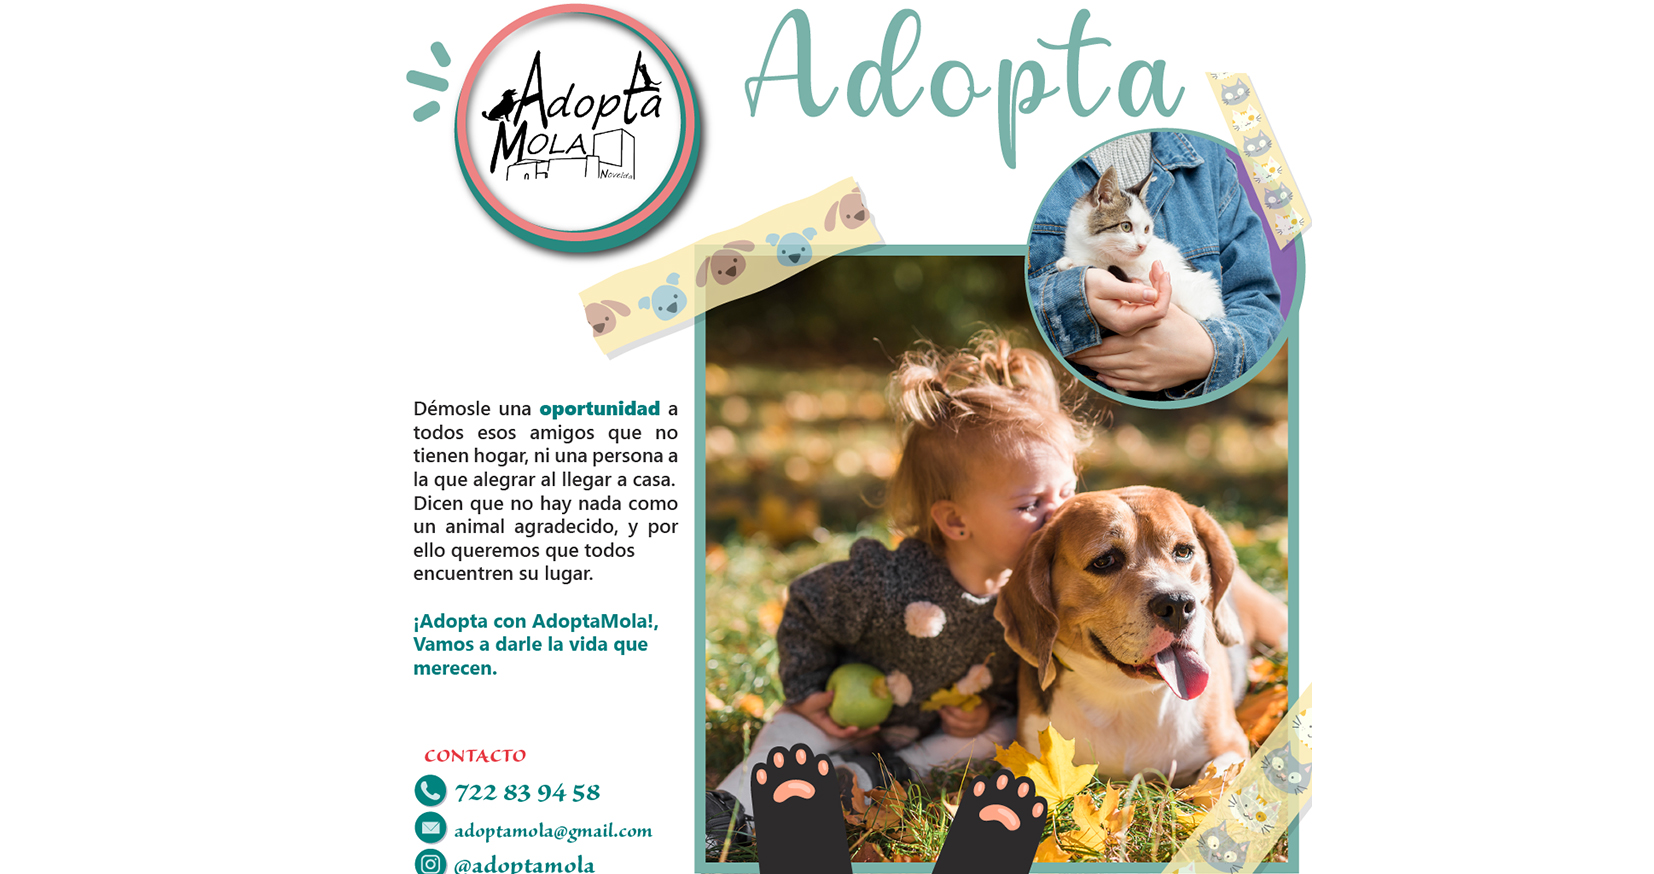 AdoptaMola presenta la campaña Adopta para darle a los animales la vida que merecen